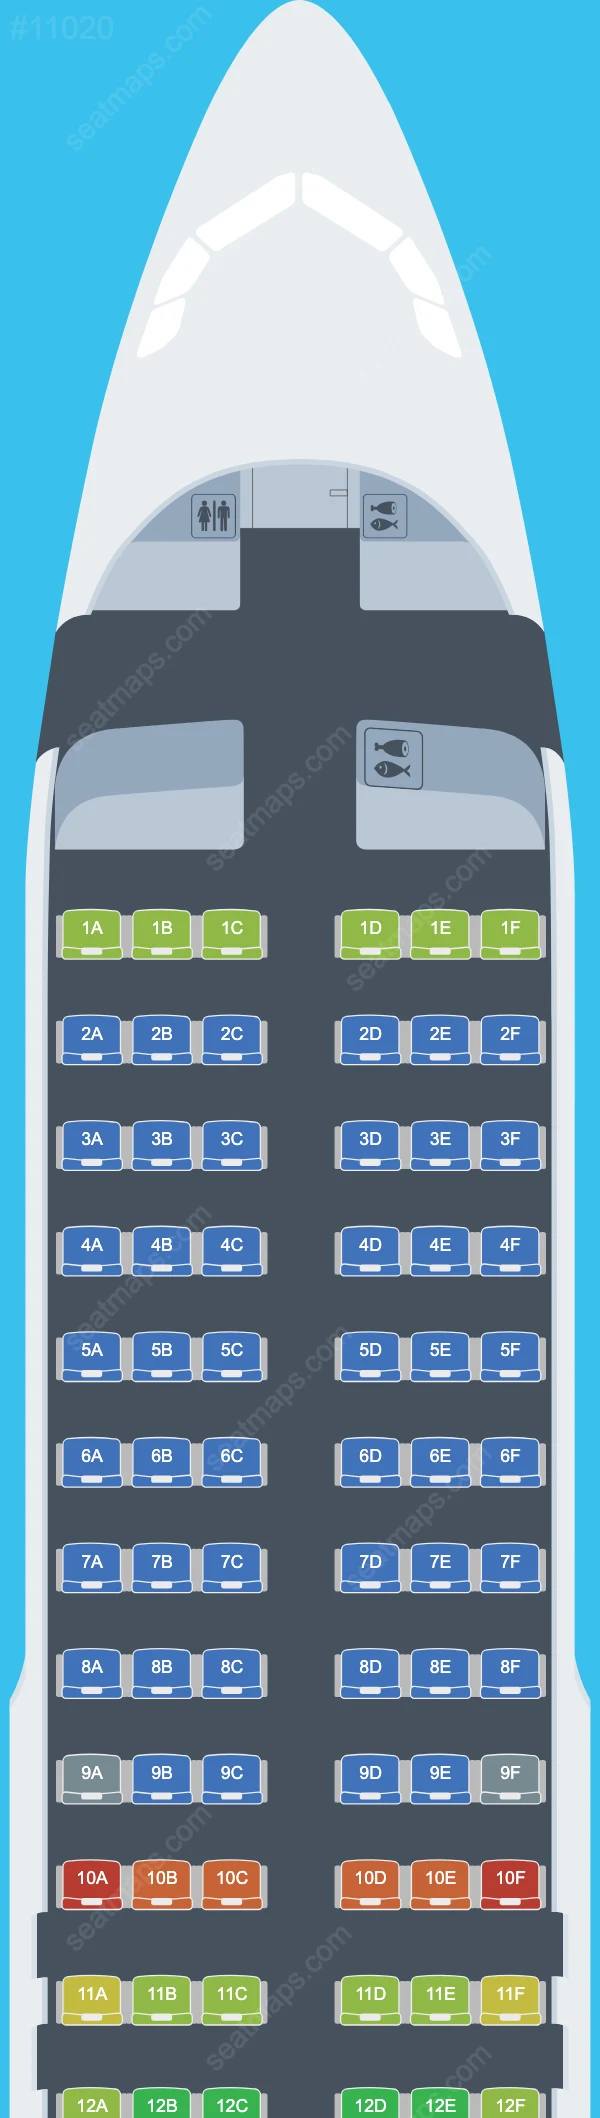 Lufthansa Airbus A320 Seat Maps A320-200 V.3